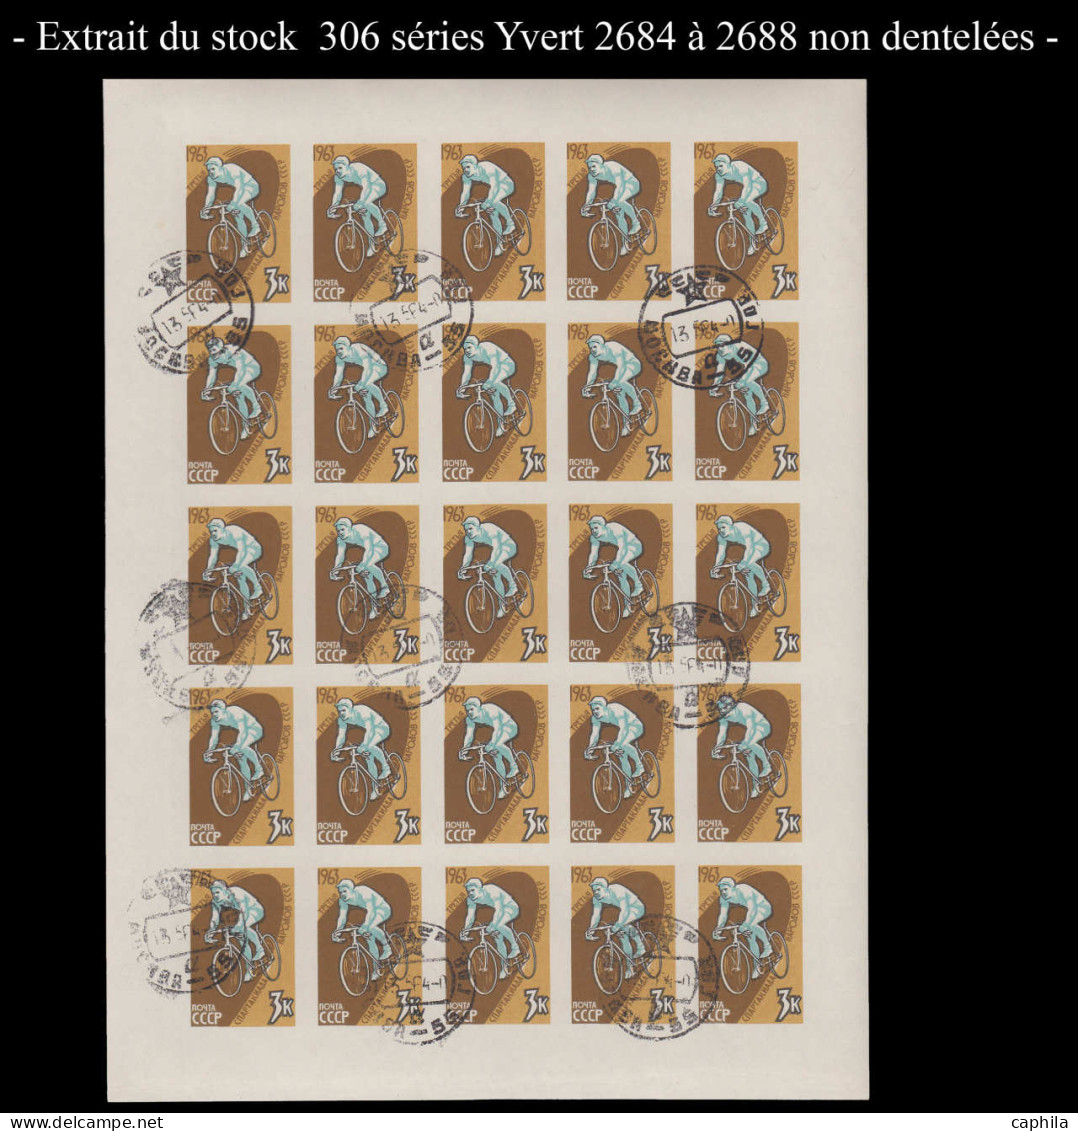 O RUSSIE - Lots & Collections - Stock de non dentelés en feuilles ou fragments entre les numéros 938B et 3105